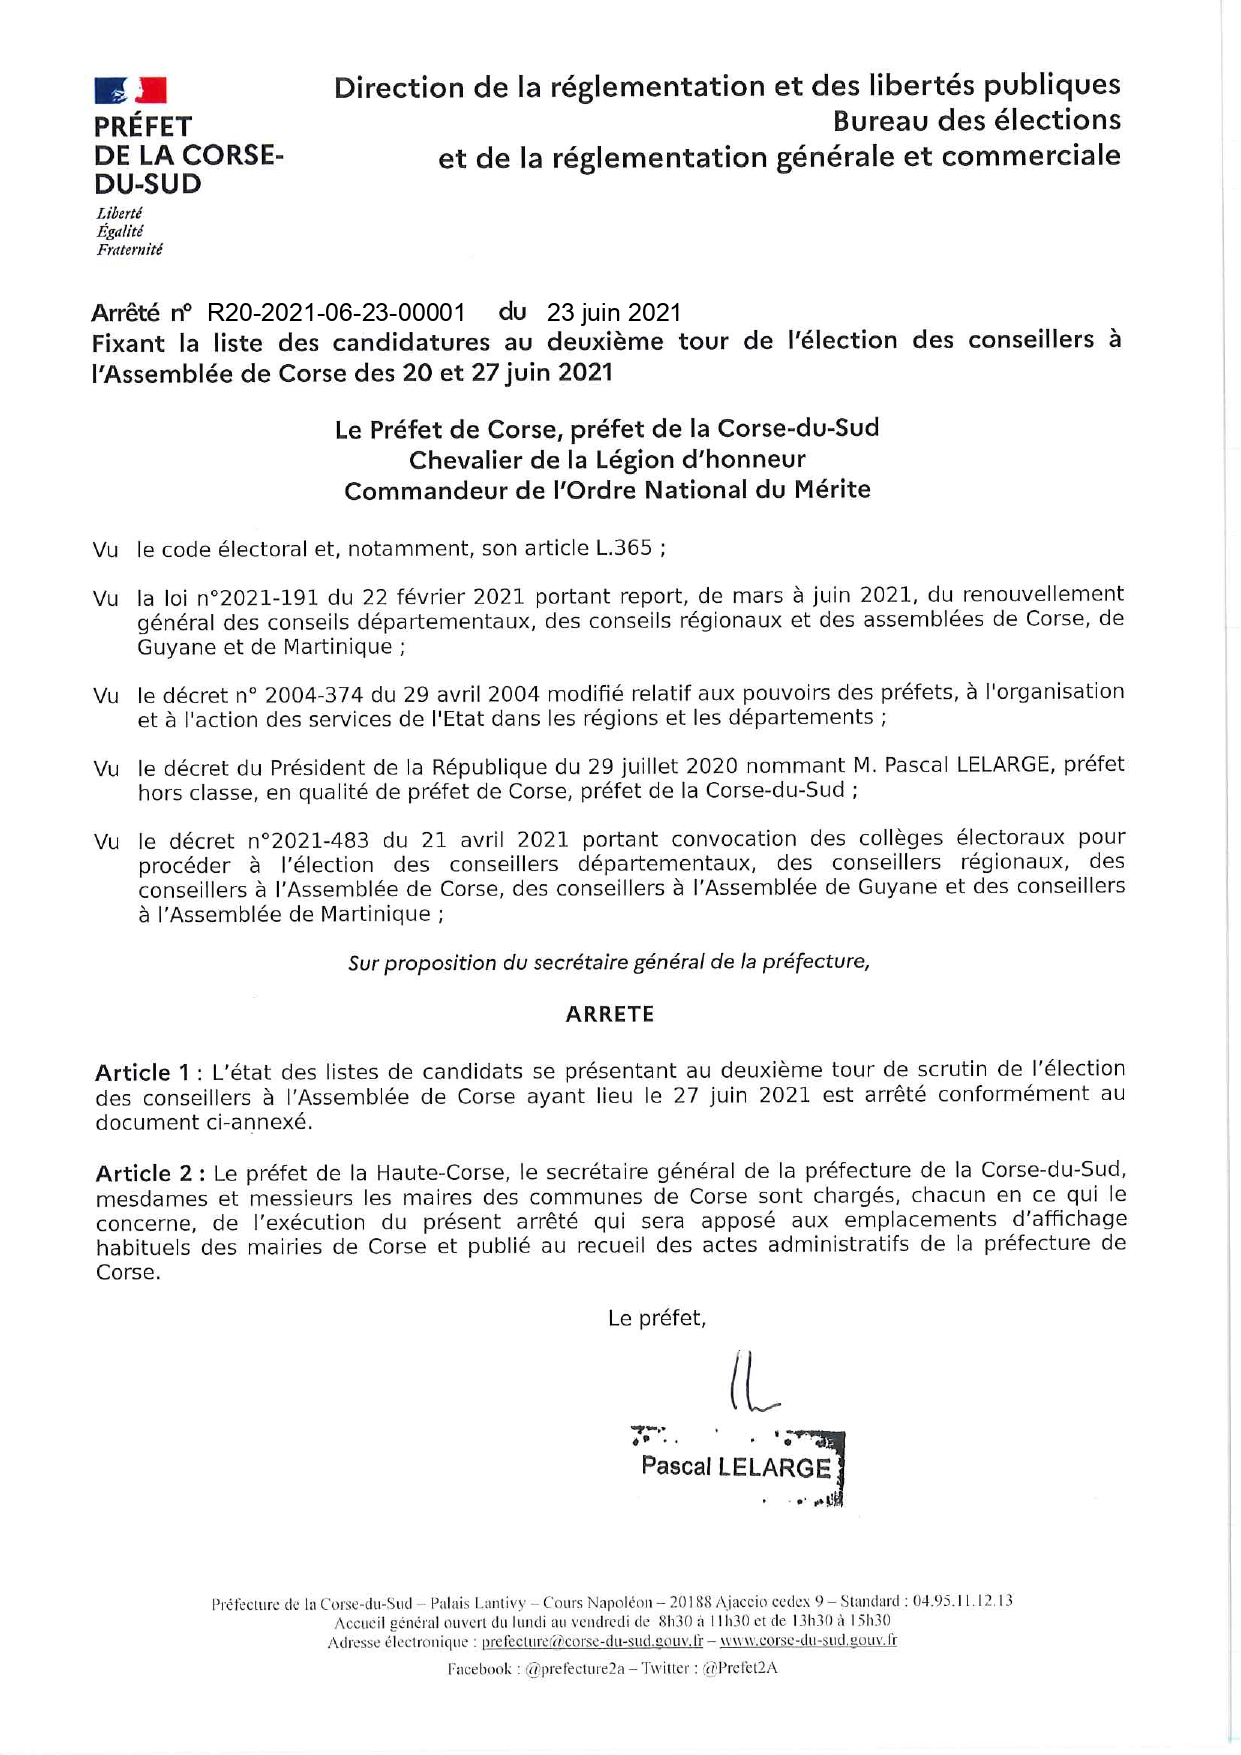 Liste des candidatures à l'élection des conseillers à l'assemblée de Corse du 27 juin 2021